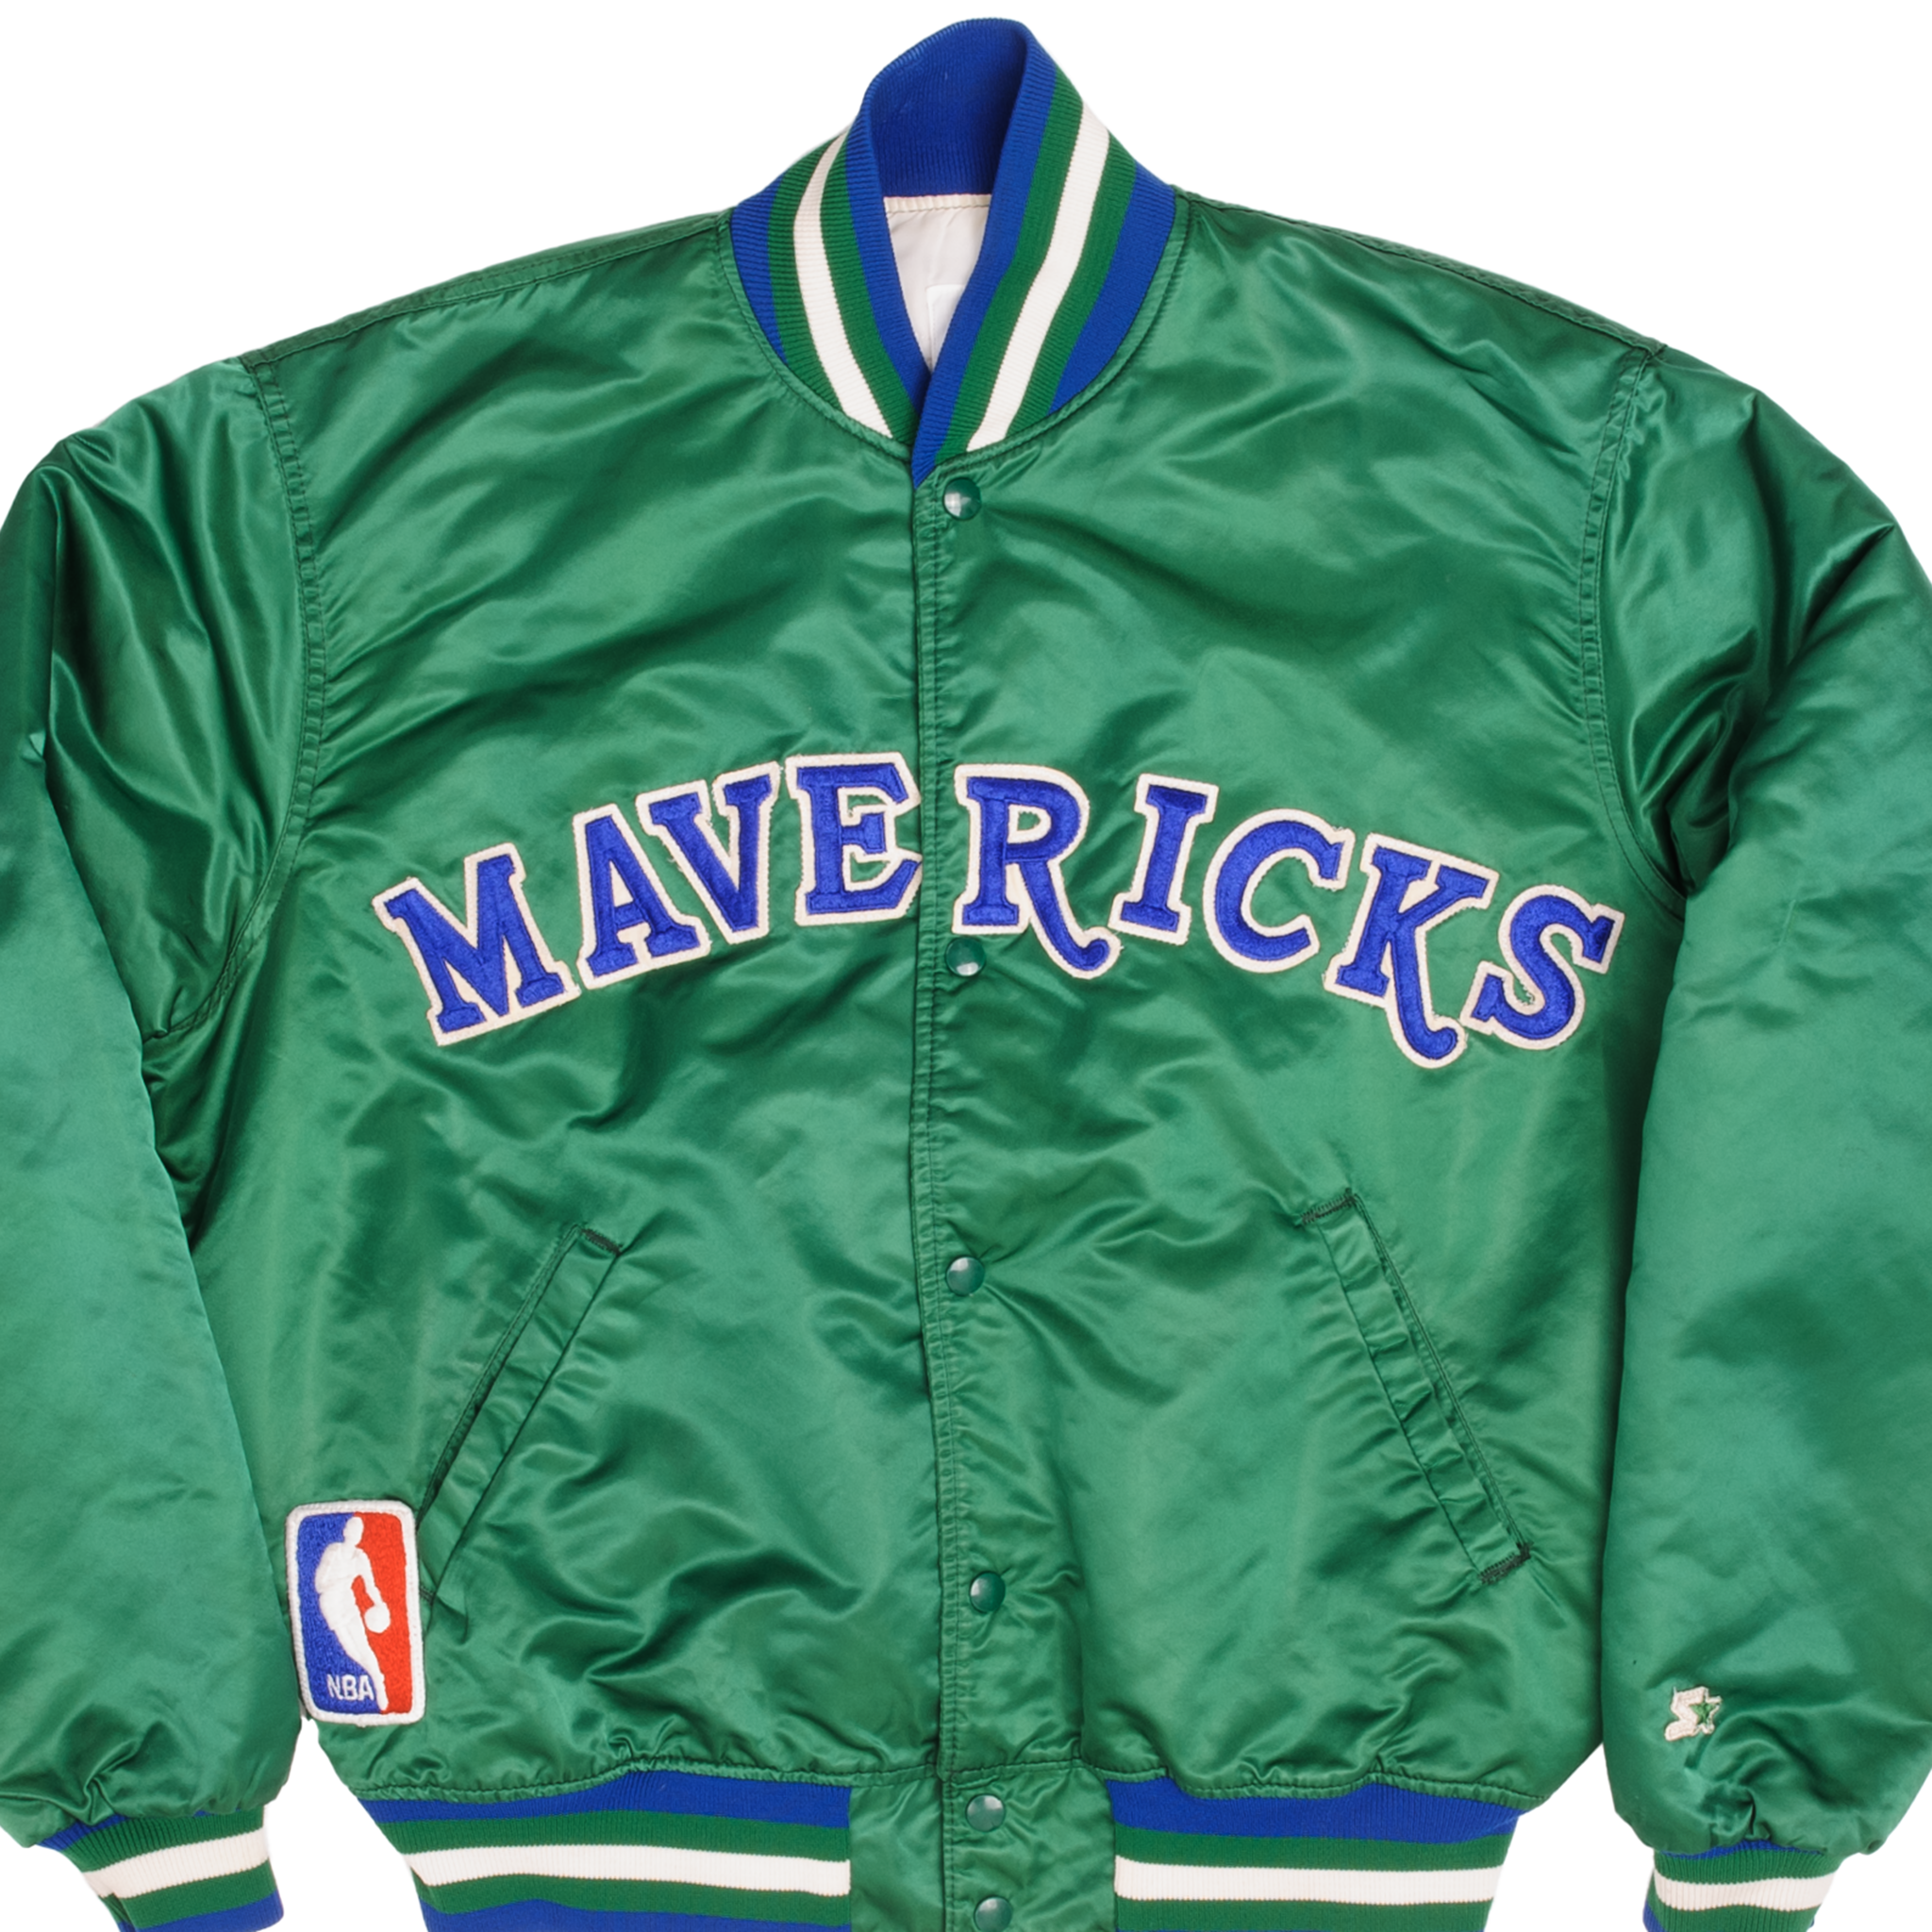 Large NBA Starter Dallas Mavericks Rakuten Varsity Jacket